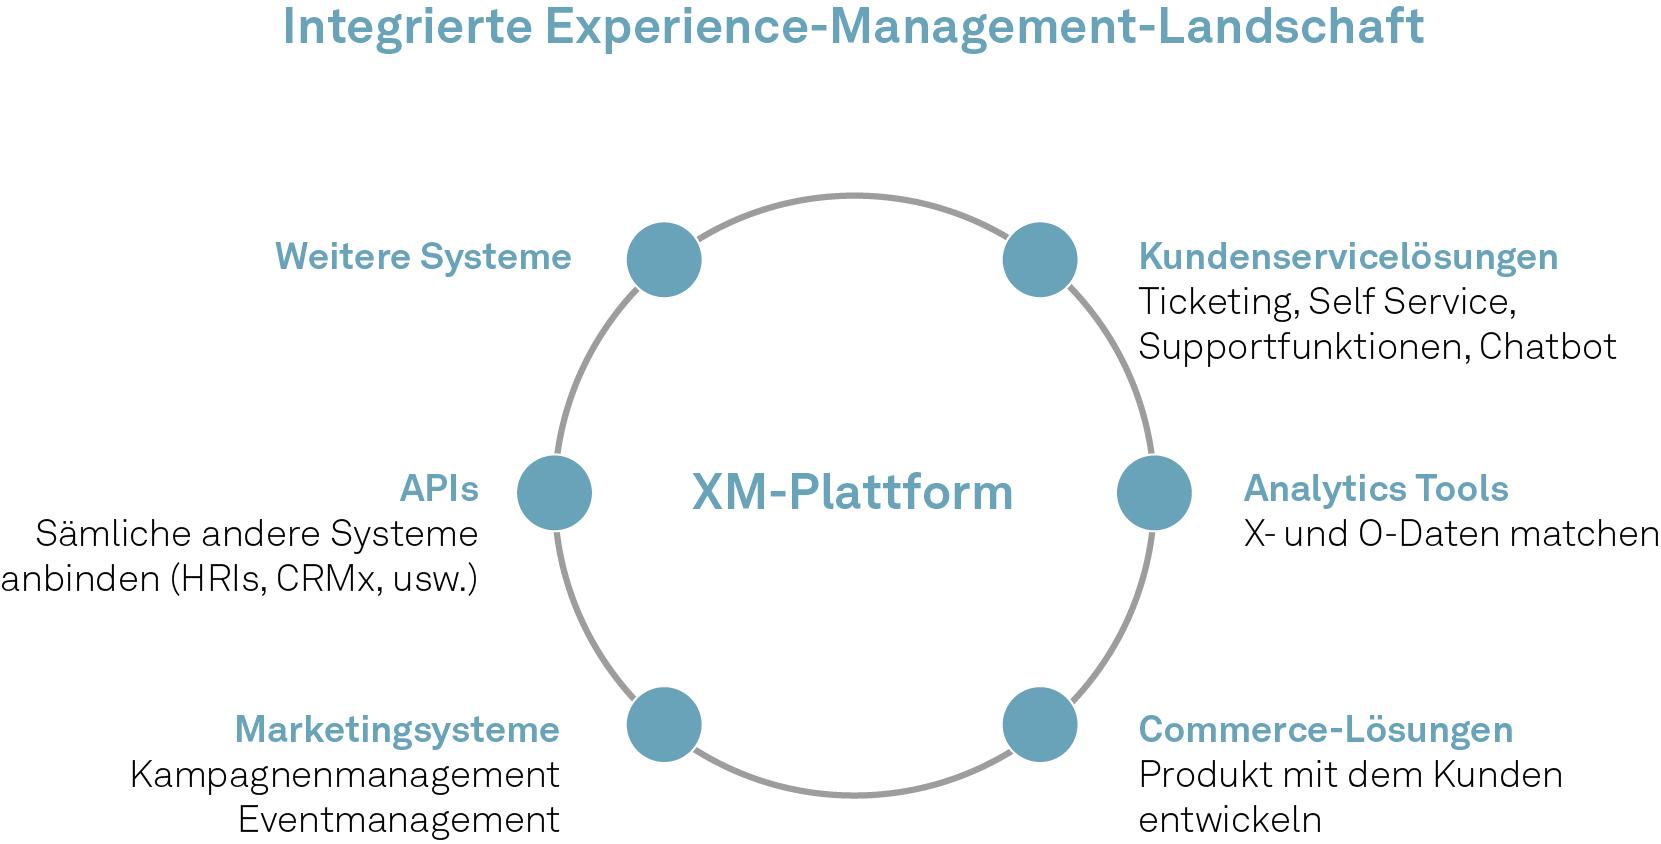 Eine Grafik, die die integrierte Experience Management Landschaft verdeutlicht.